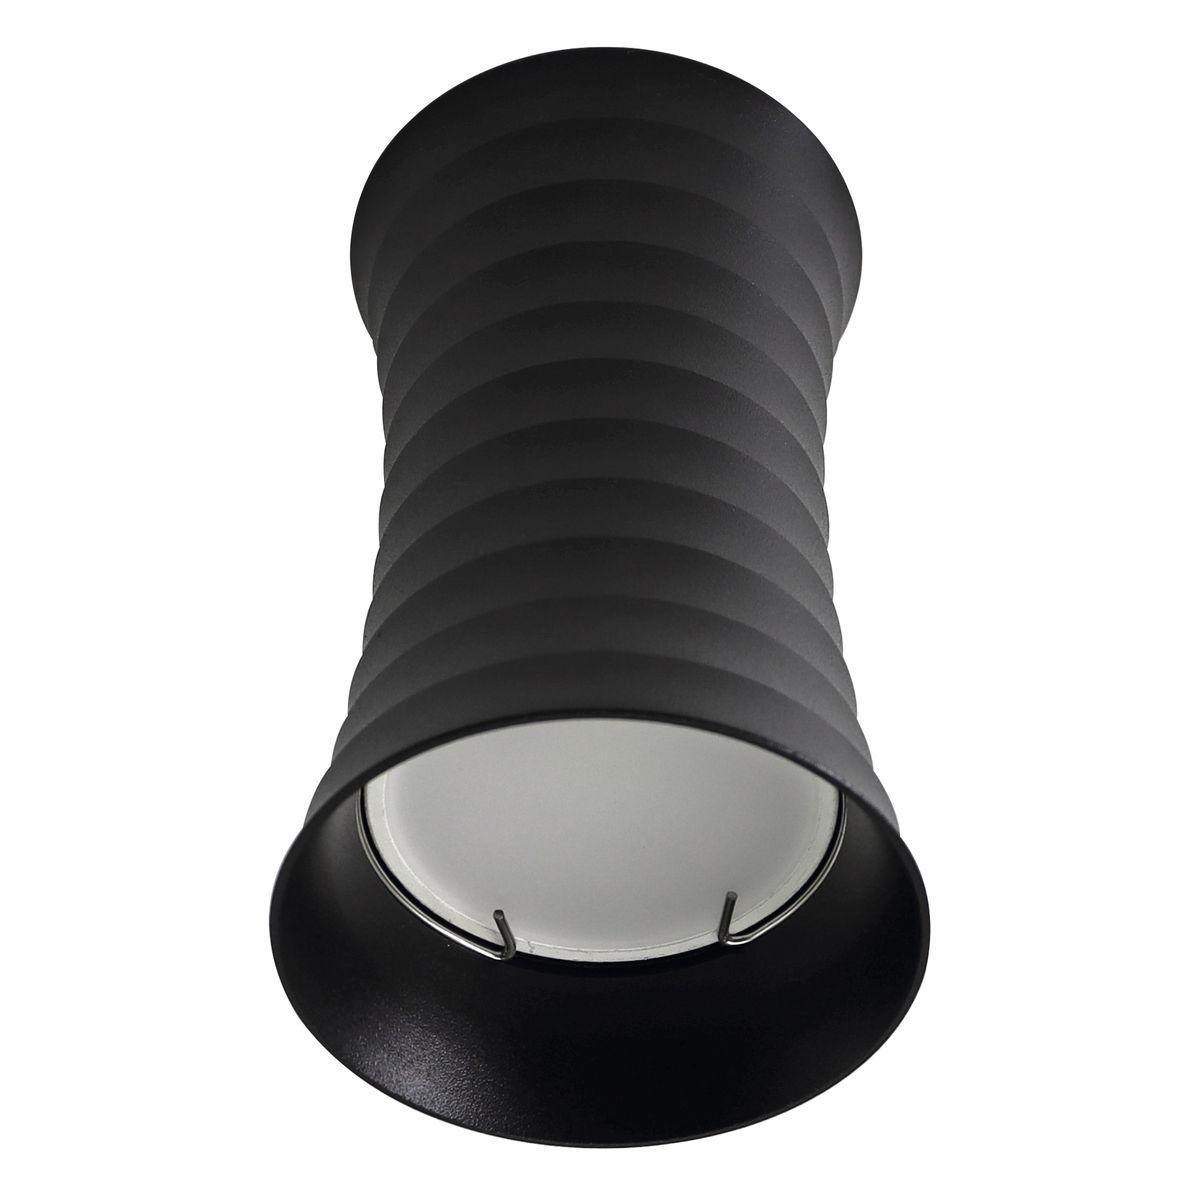 Потолочный светильник Fametto Sotto DLC-S605 GU10 Black UL-00008859 жаровня гранит black induction pro 4 л стеклянная крышка антипригарное покрытие индукция чёрный